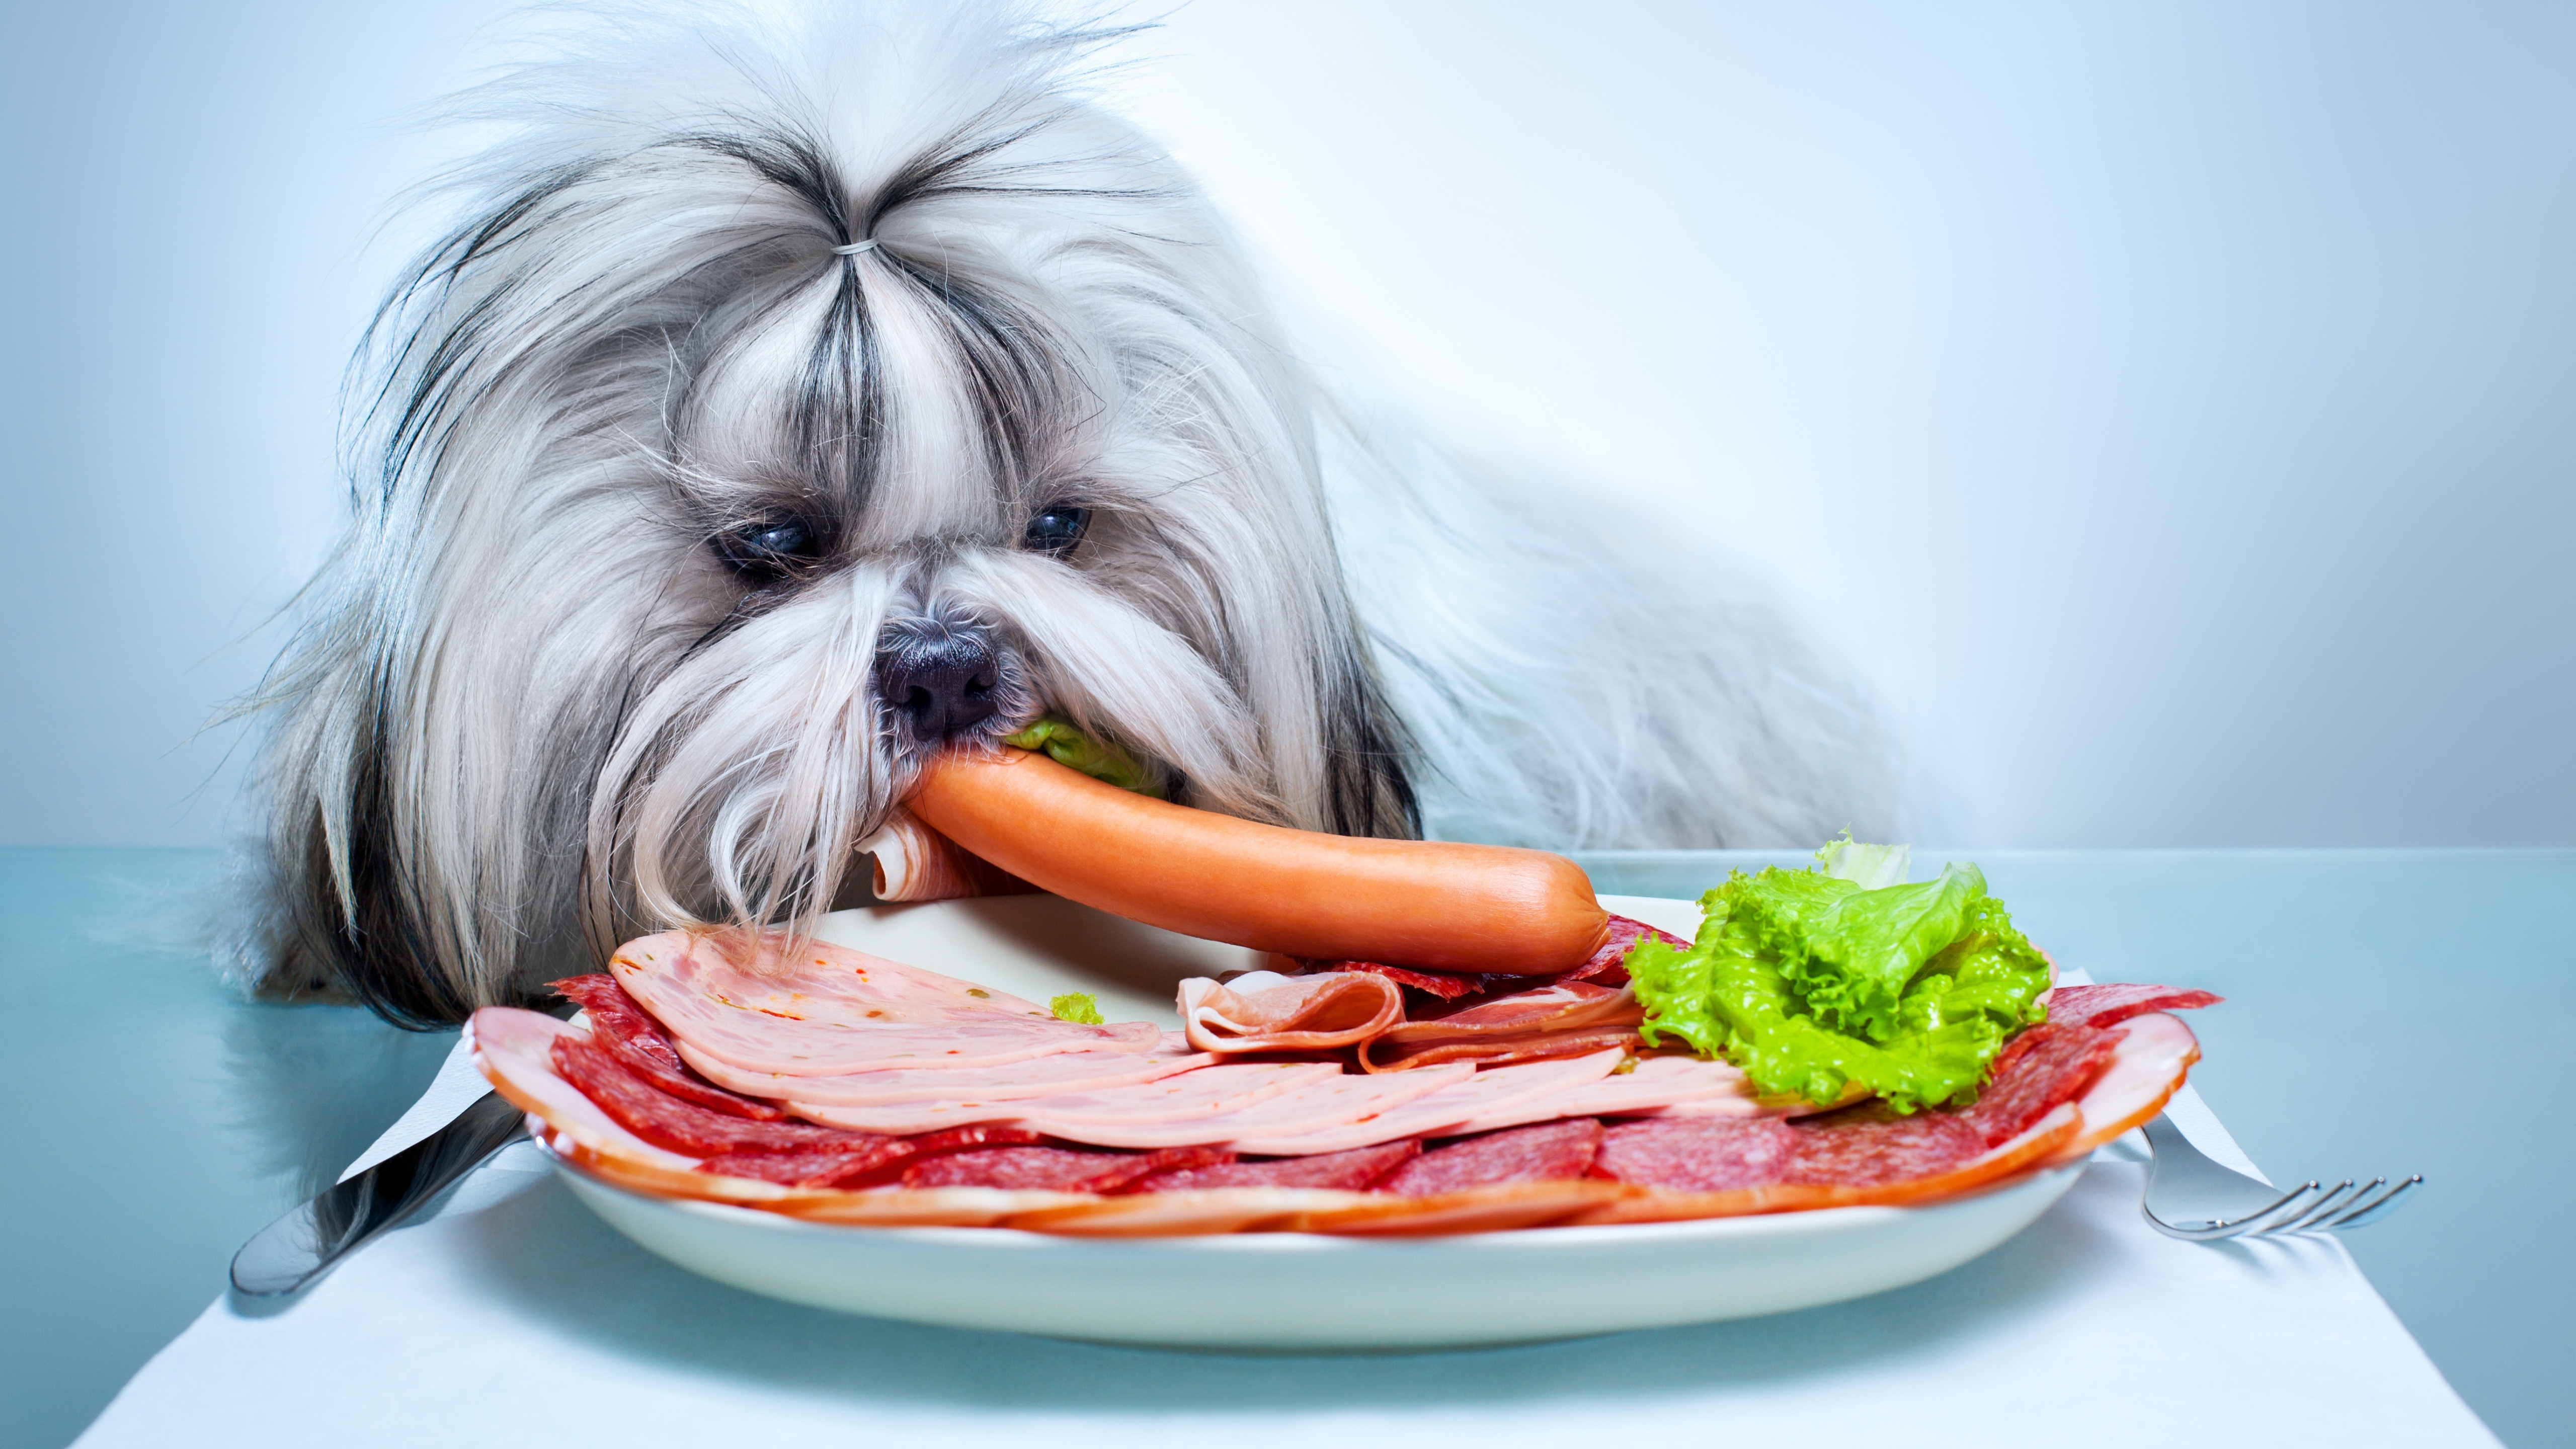 shih tzu, animal, dog, meat, sausage, dogs